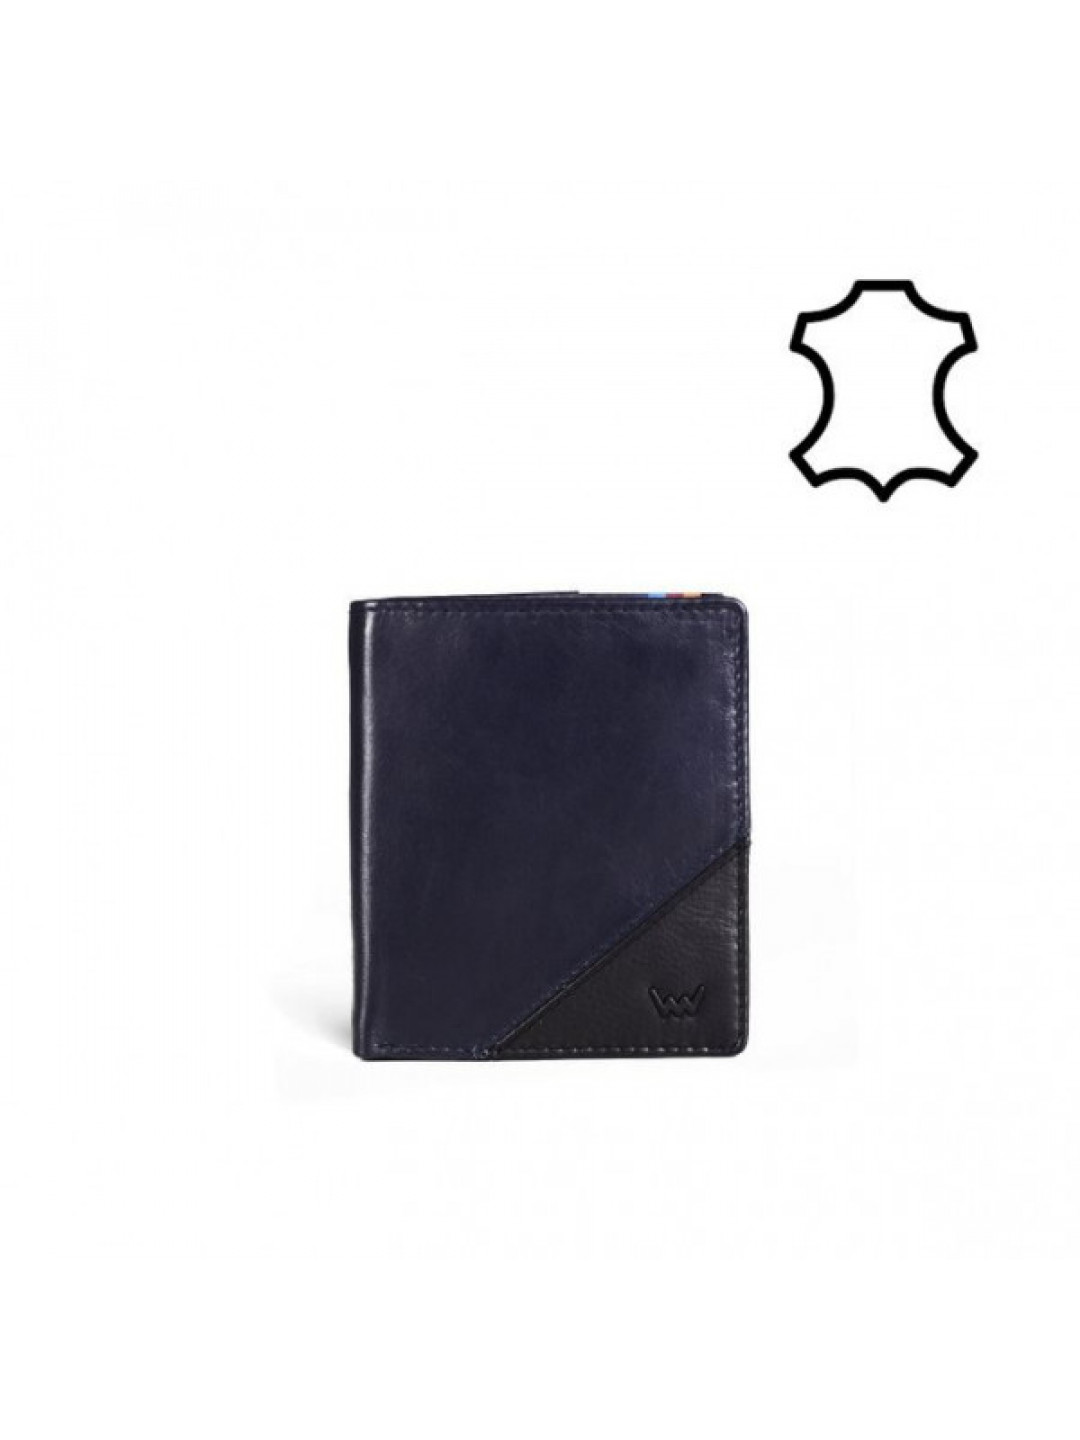 Pánská kožená peněženka Jameson VUCH černá tmavě modrá